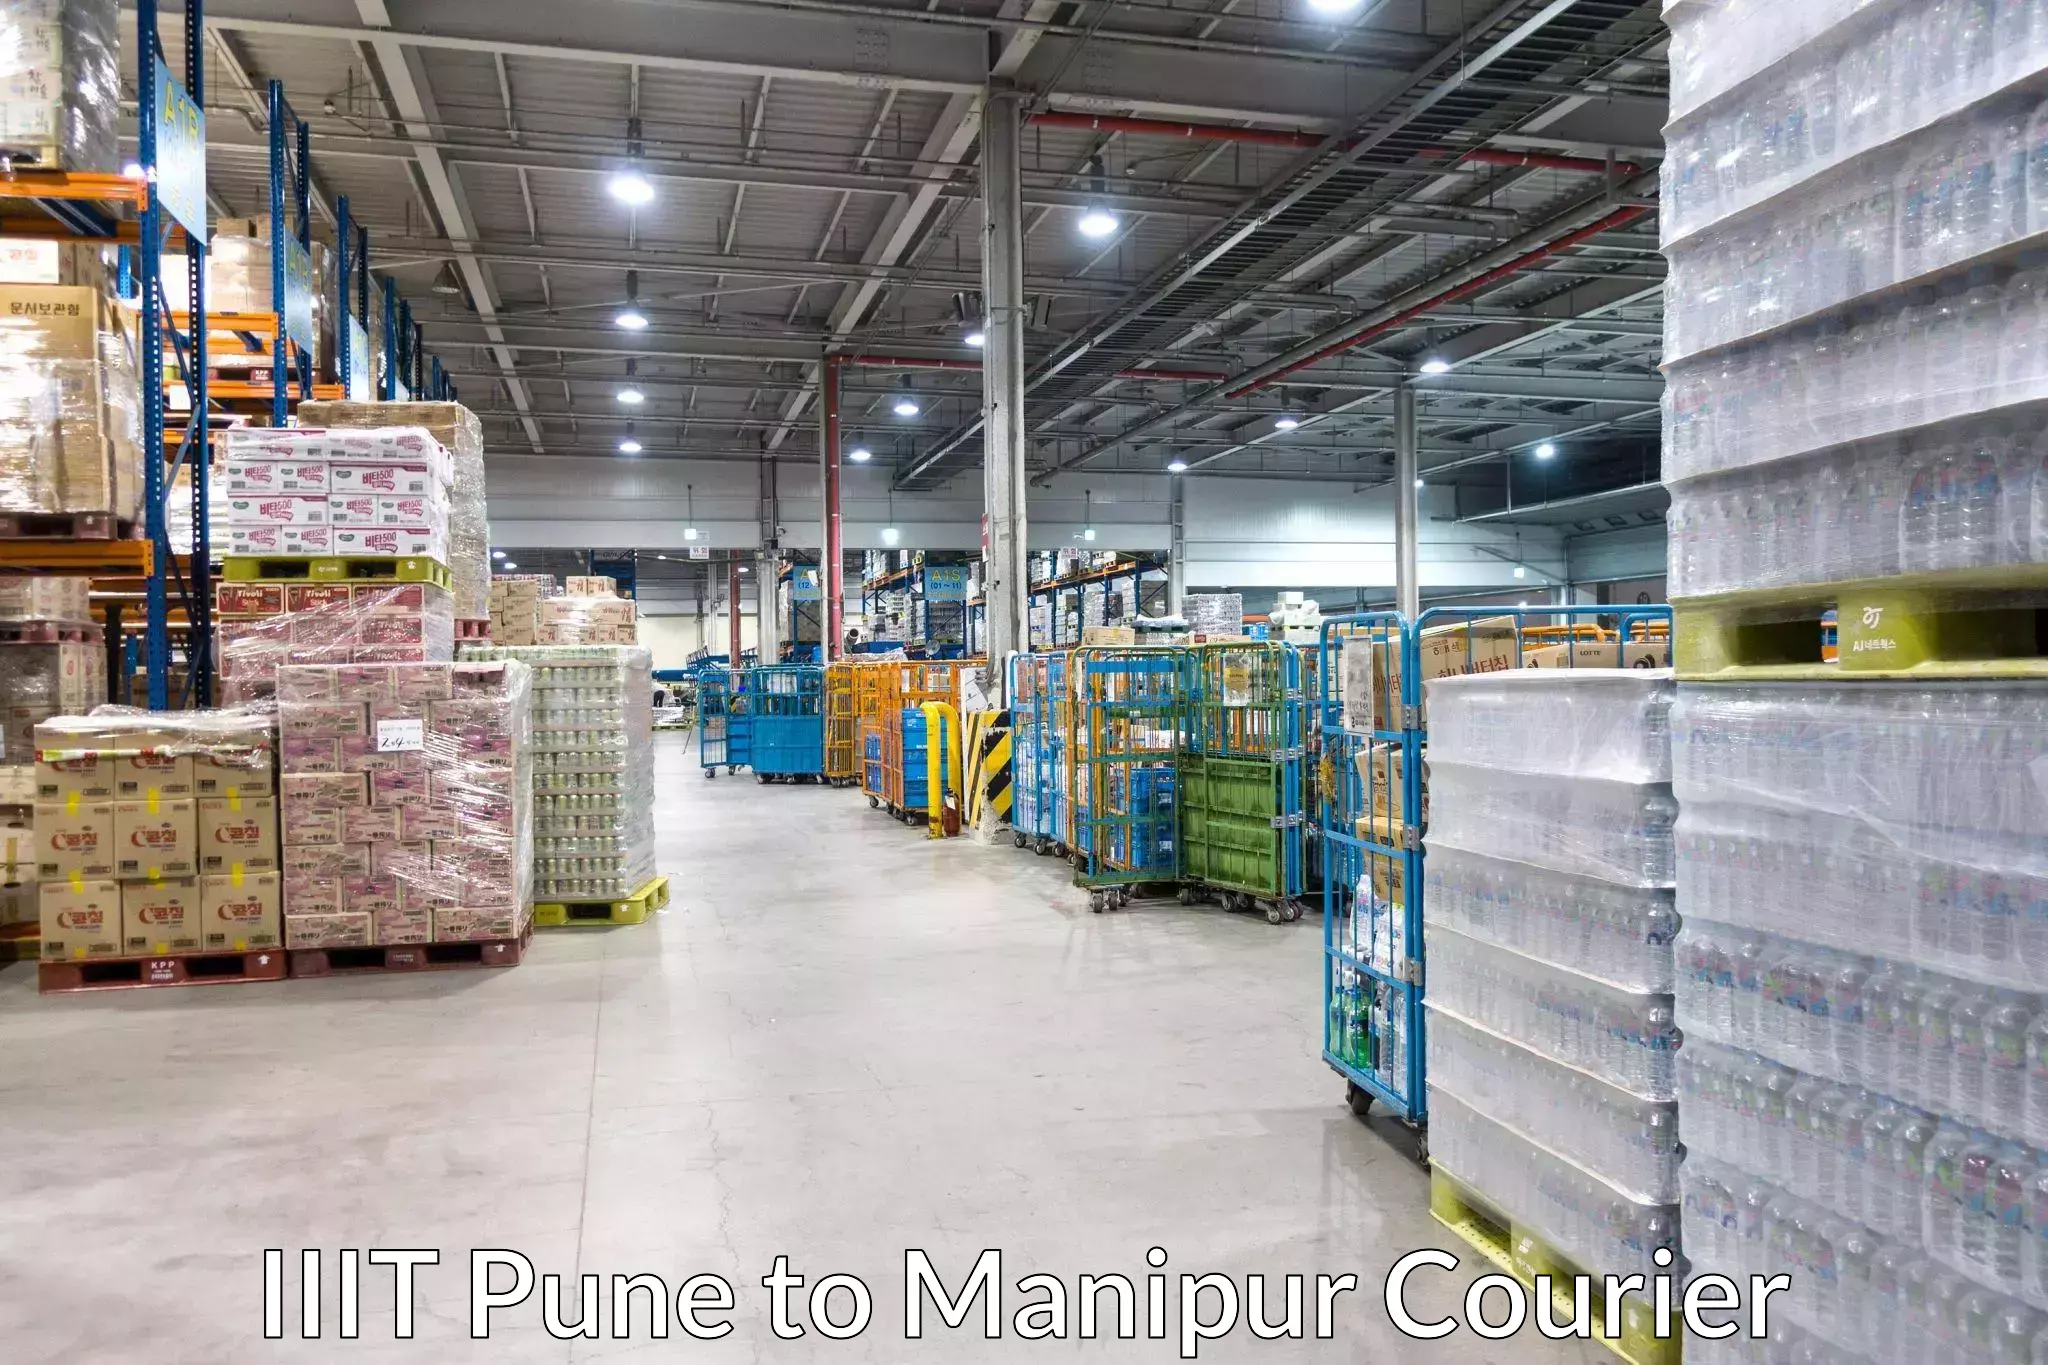 Customer-focused courier IIIT Pune to Chandel